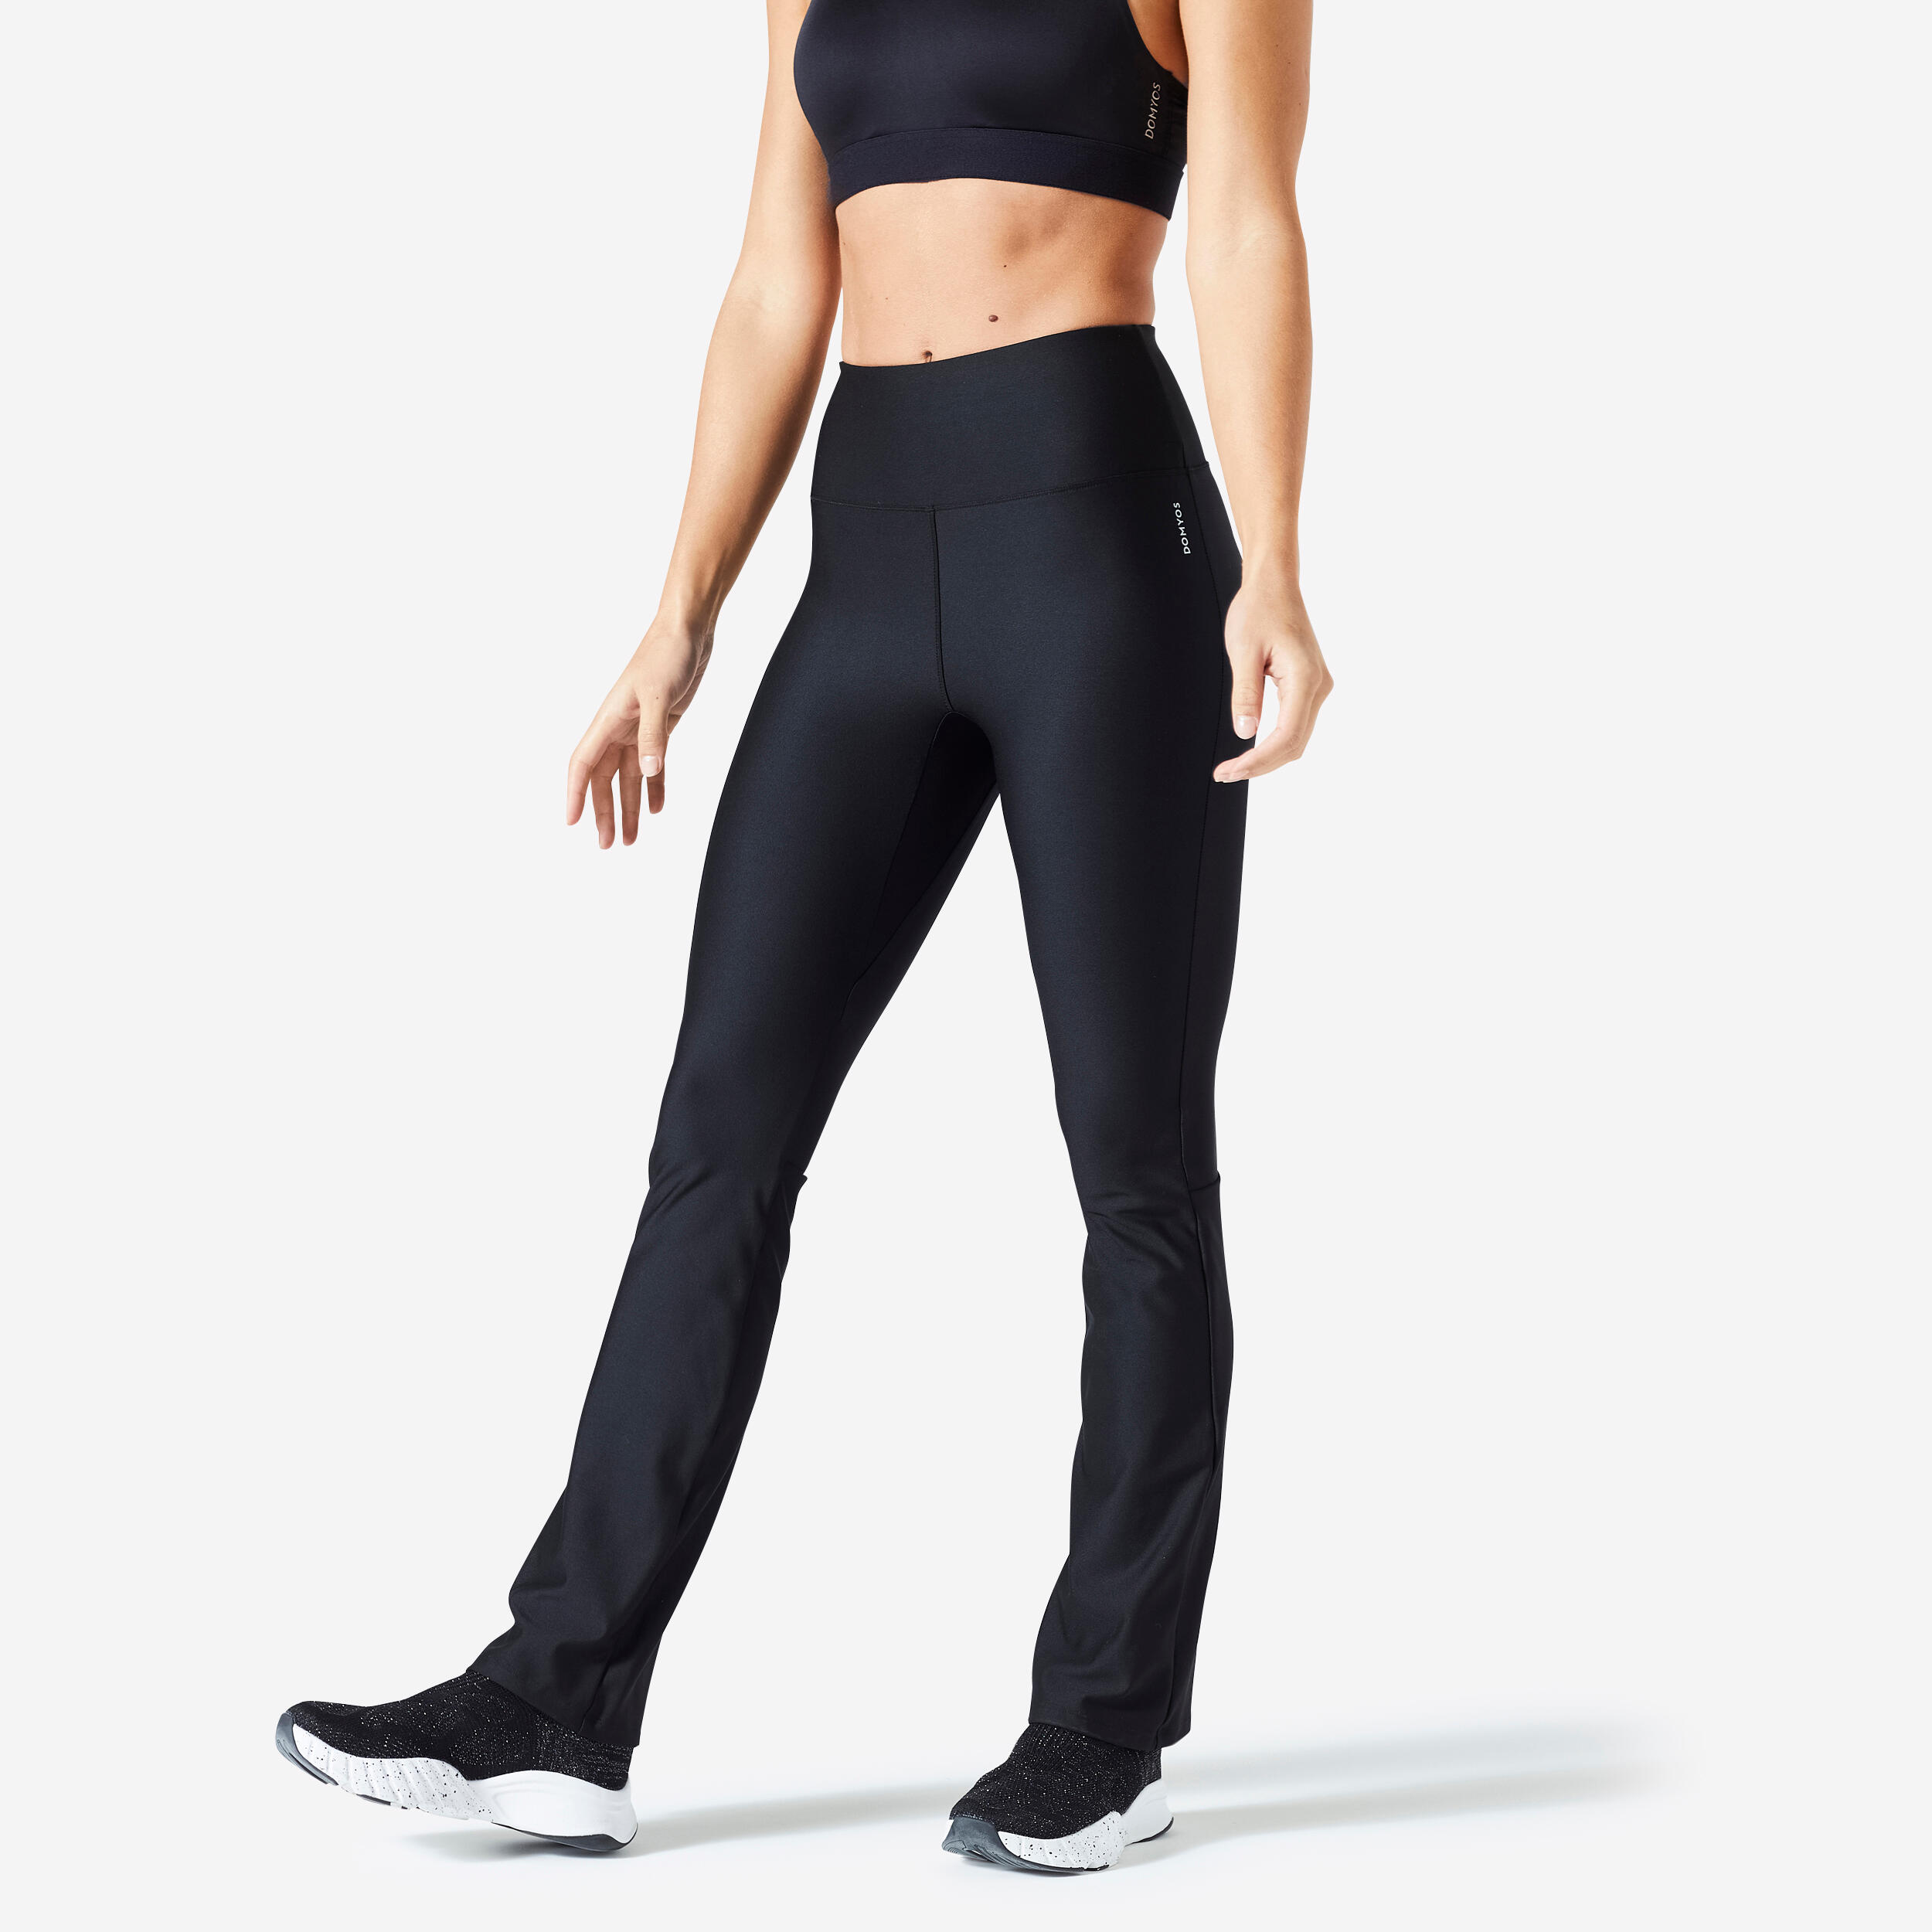 Image of Women’s Fitness Leggings – FTI 100 Black